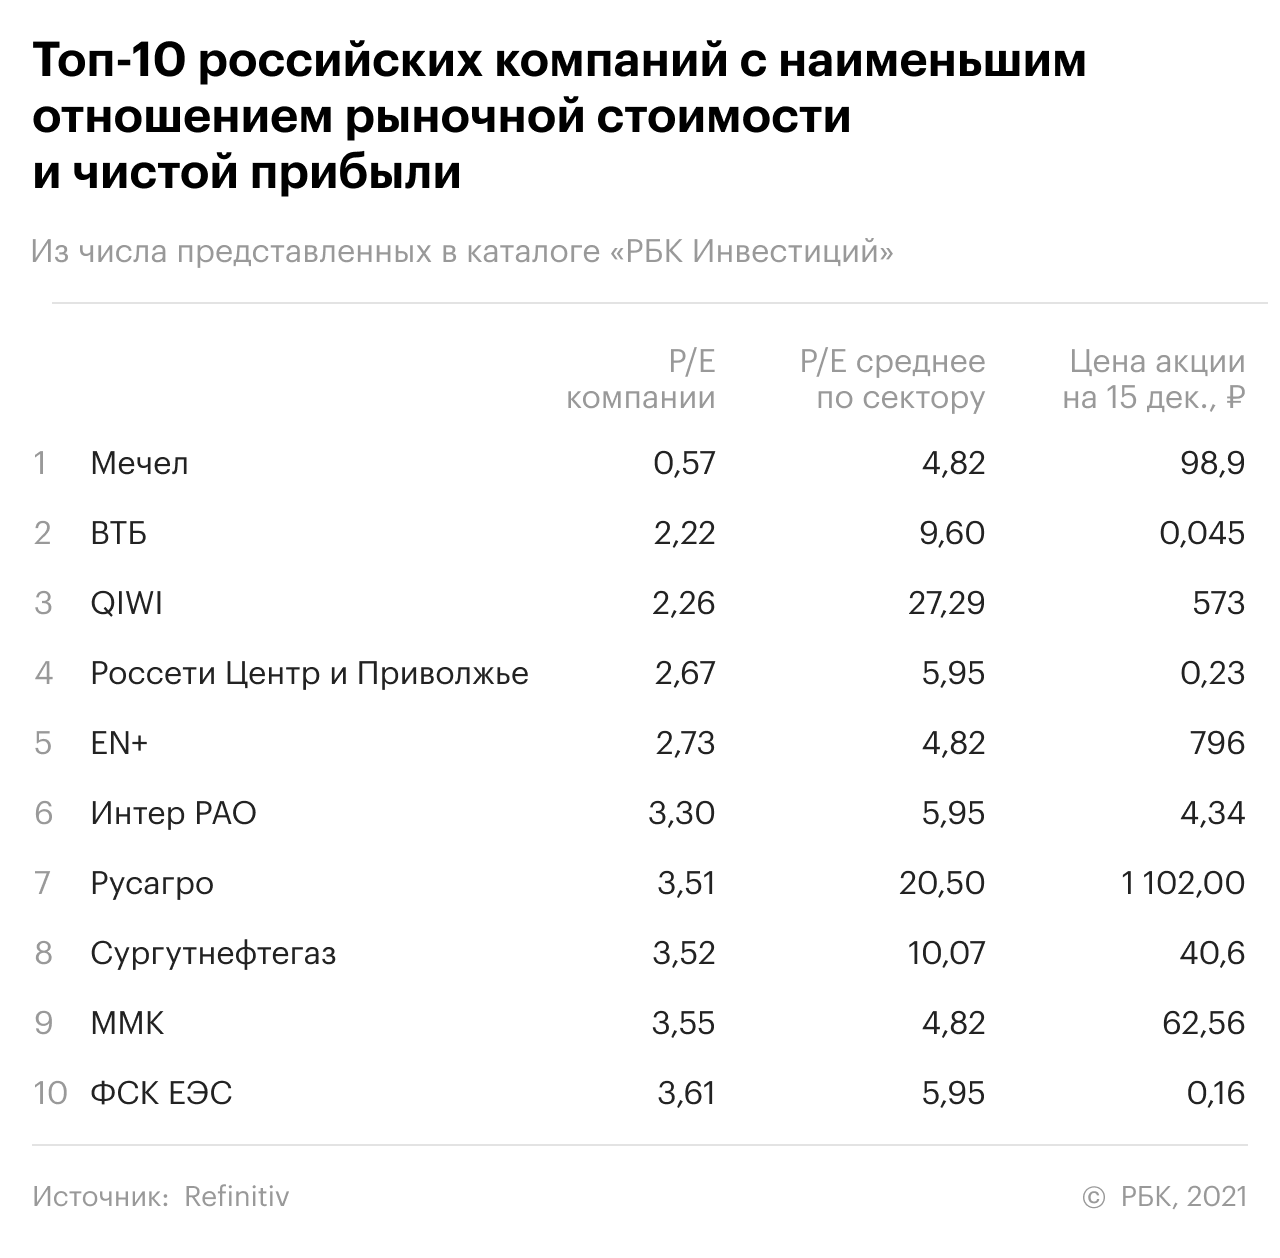 Топ-10 российских компаний с наименьшим P/E